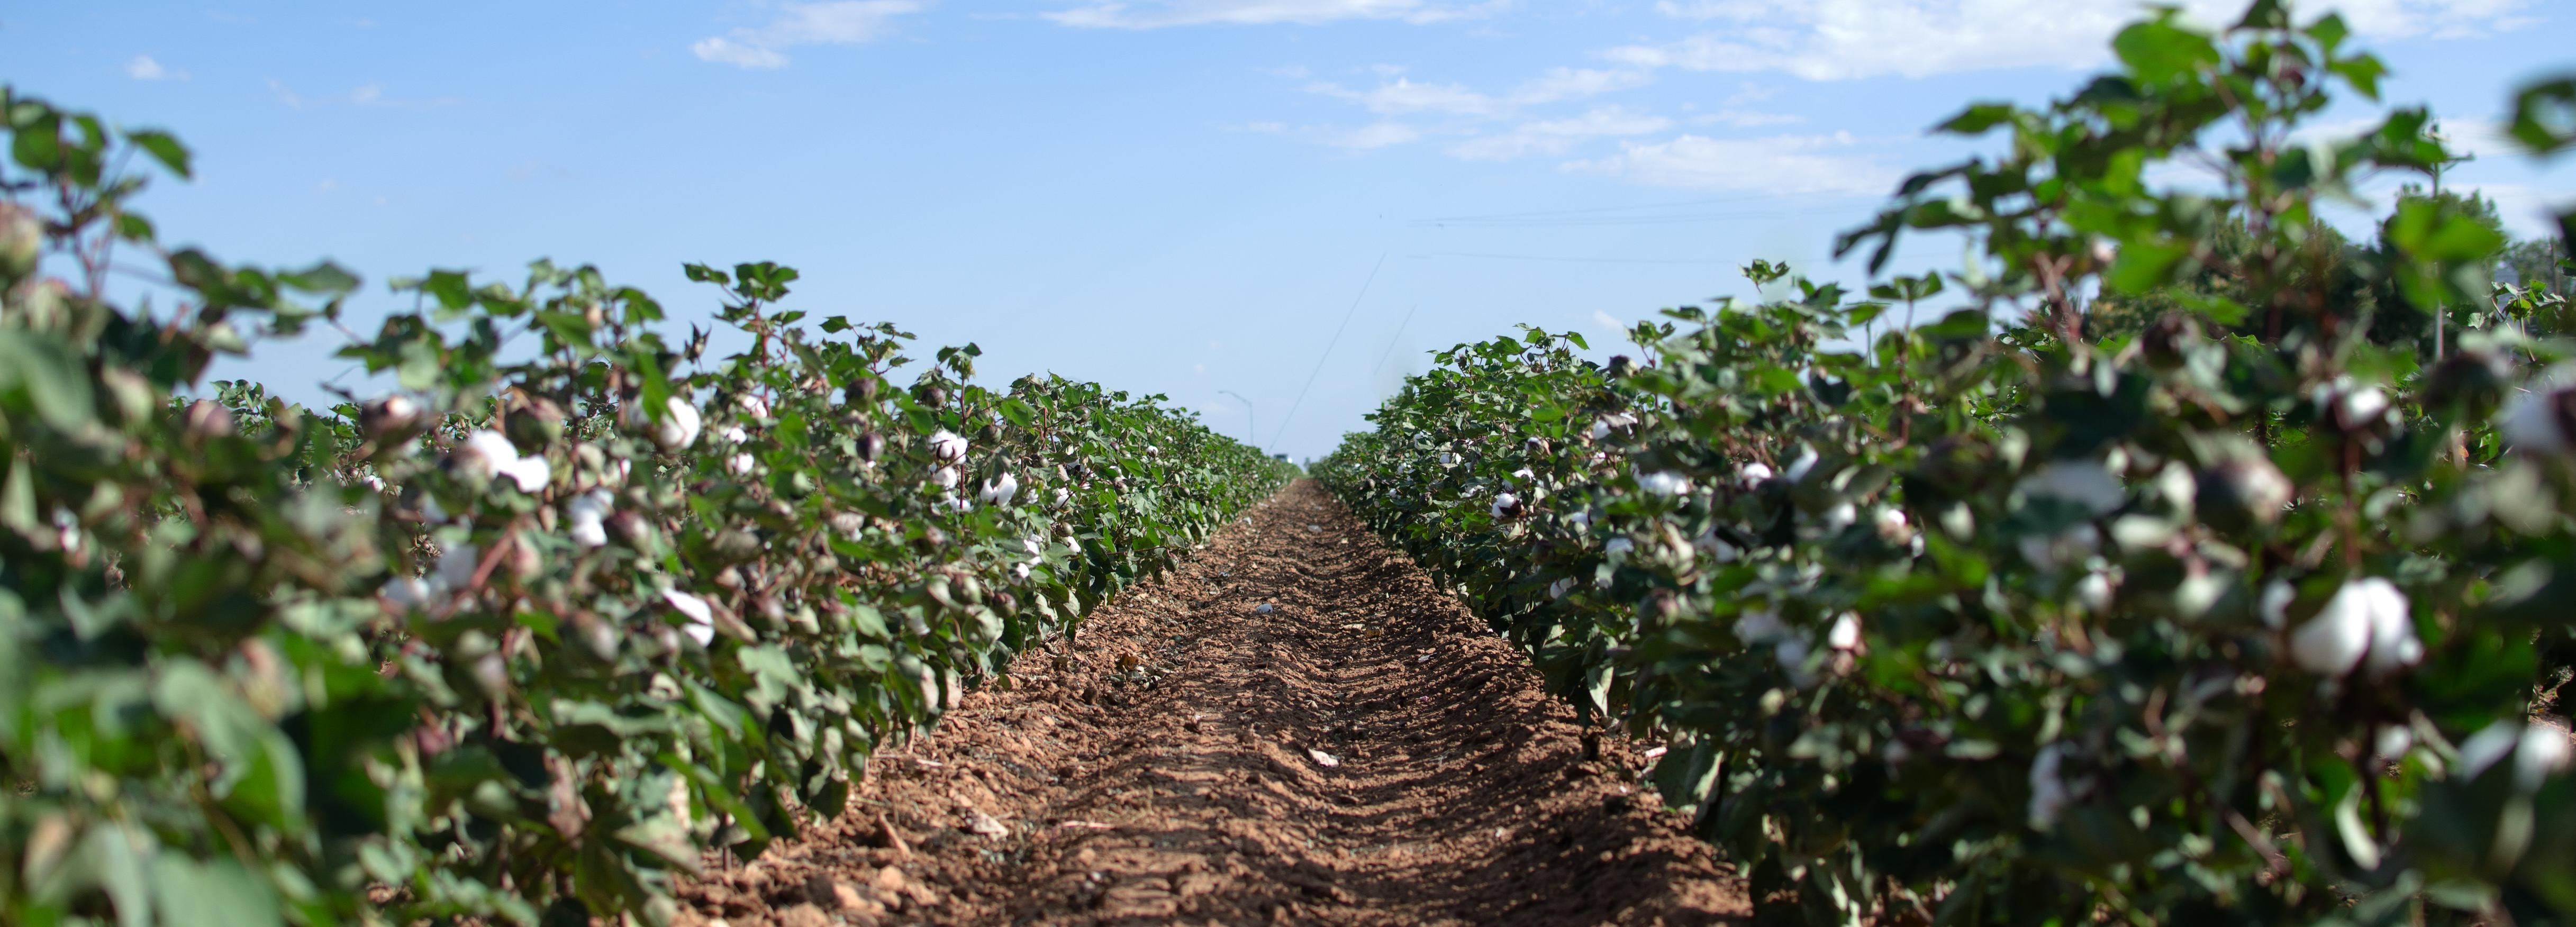 Cotton field, USA © BCI